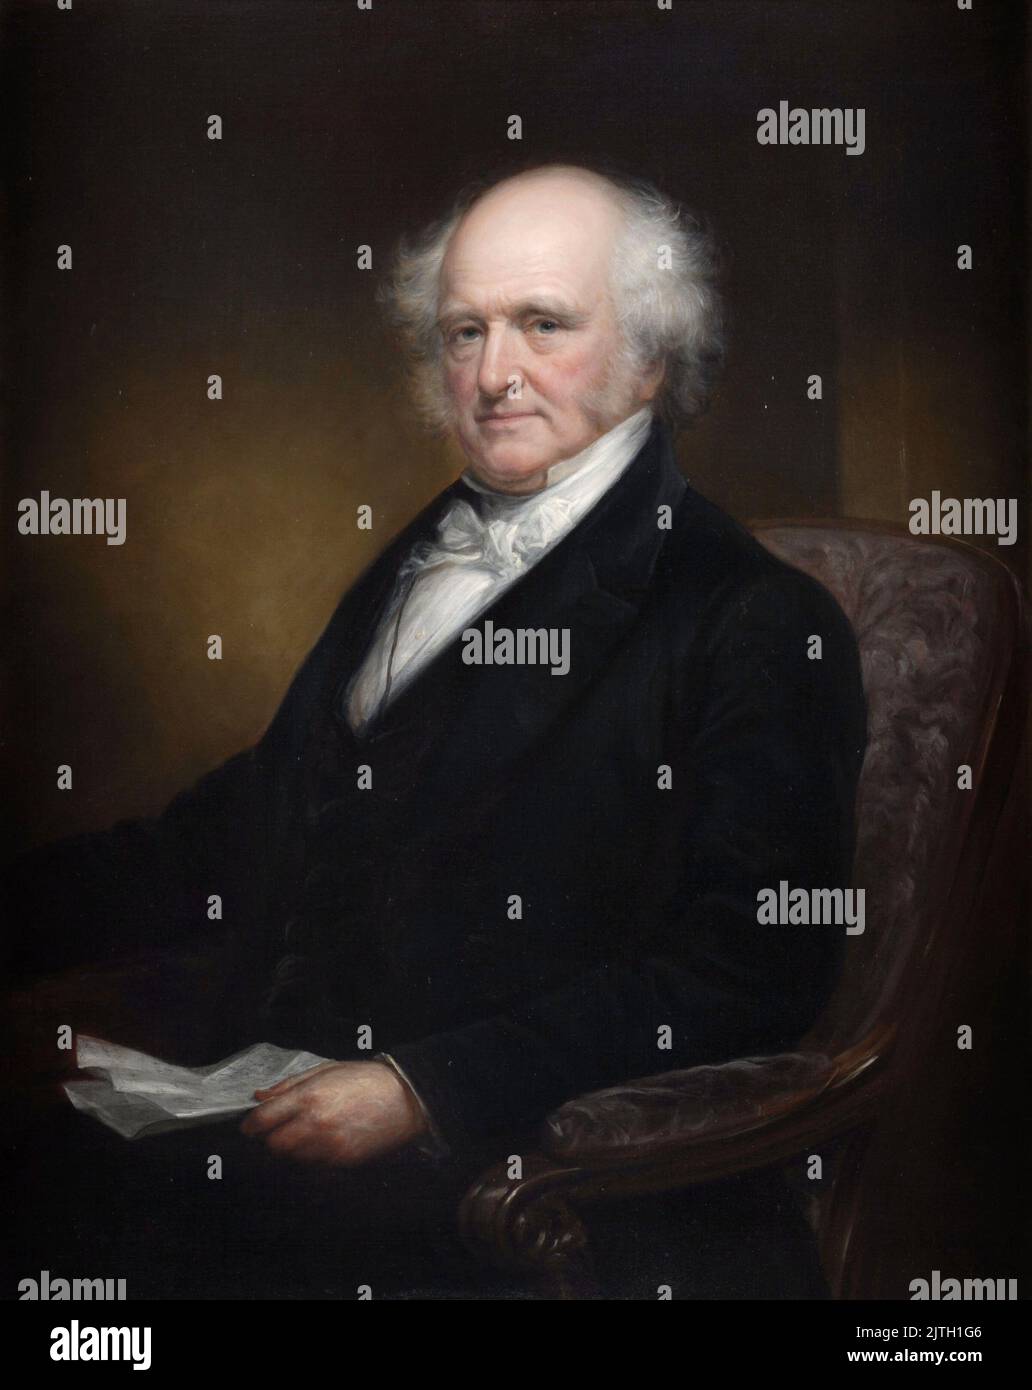 Gouverneursporträt von Martin Van Buren von Daniel Huntington im Bürgerkrieg. Martin van Buren war der achte Präsident der USA. Stockfoto